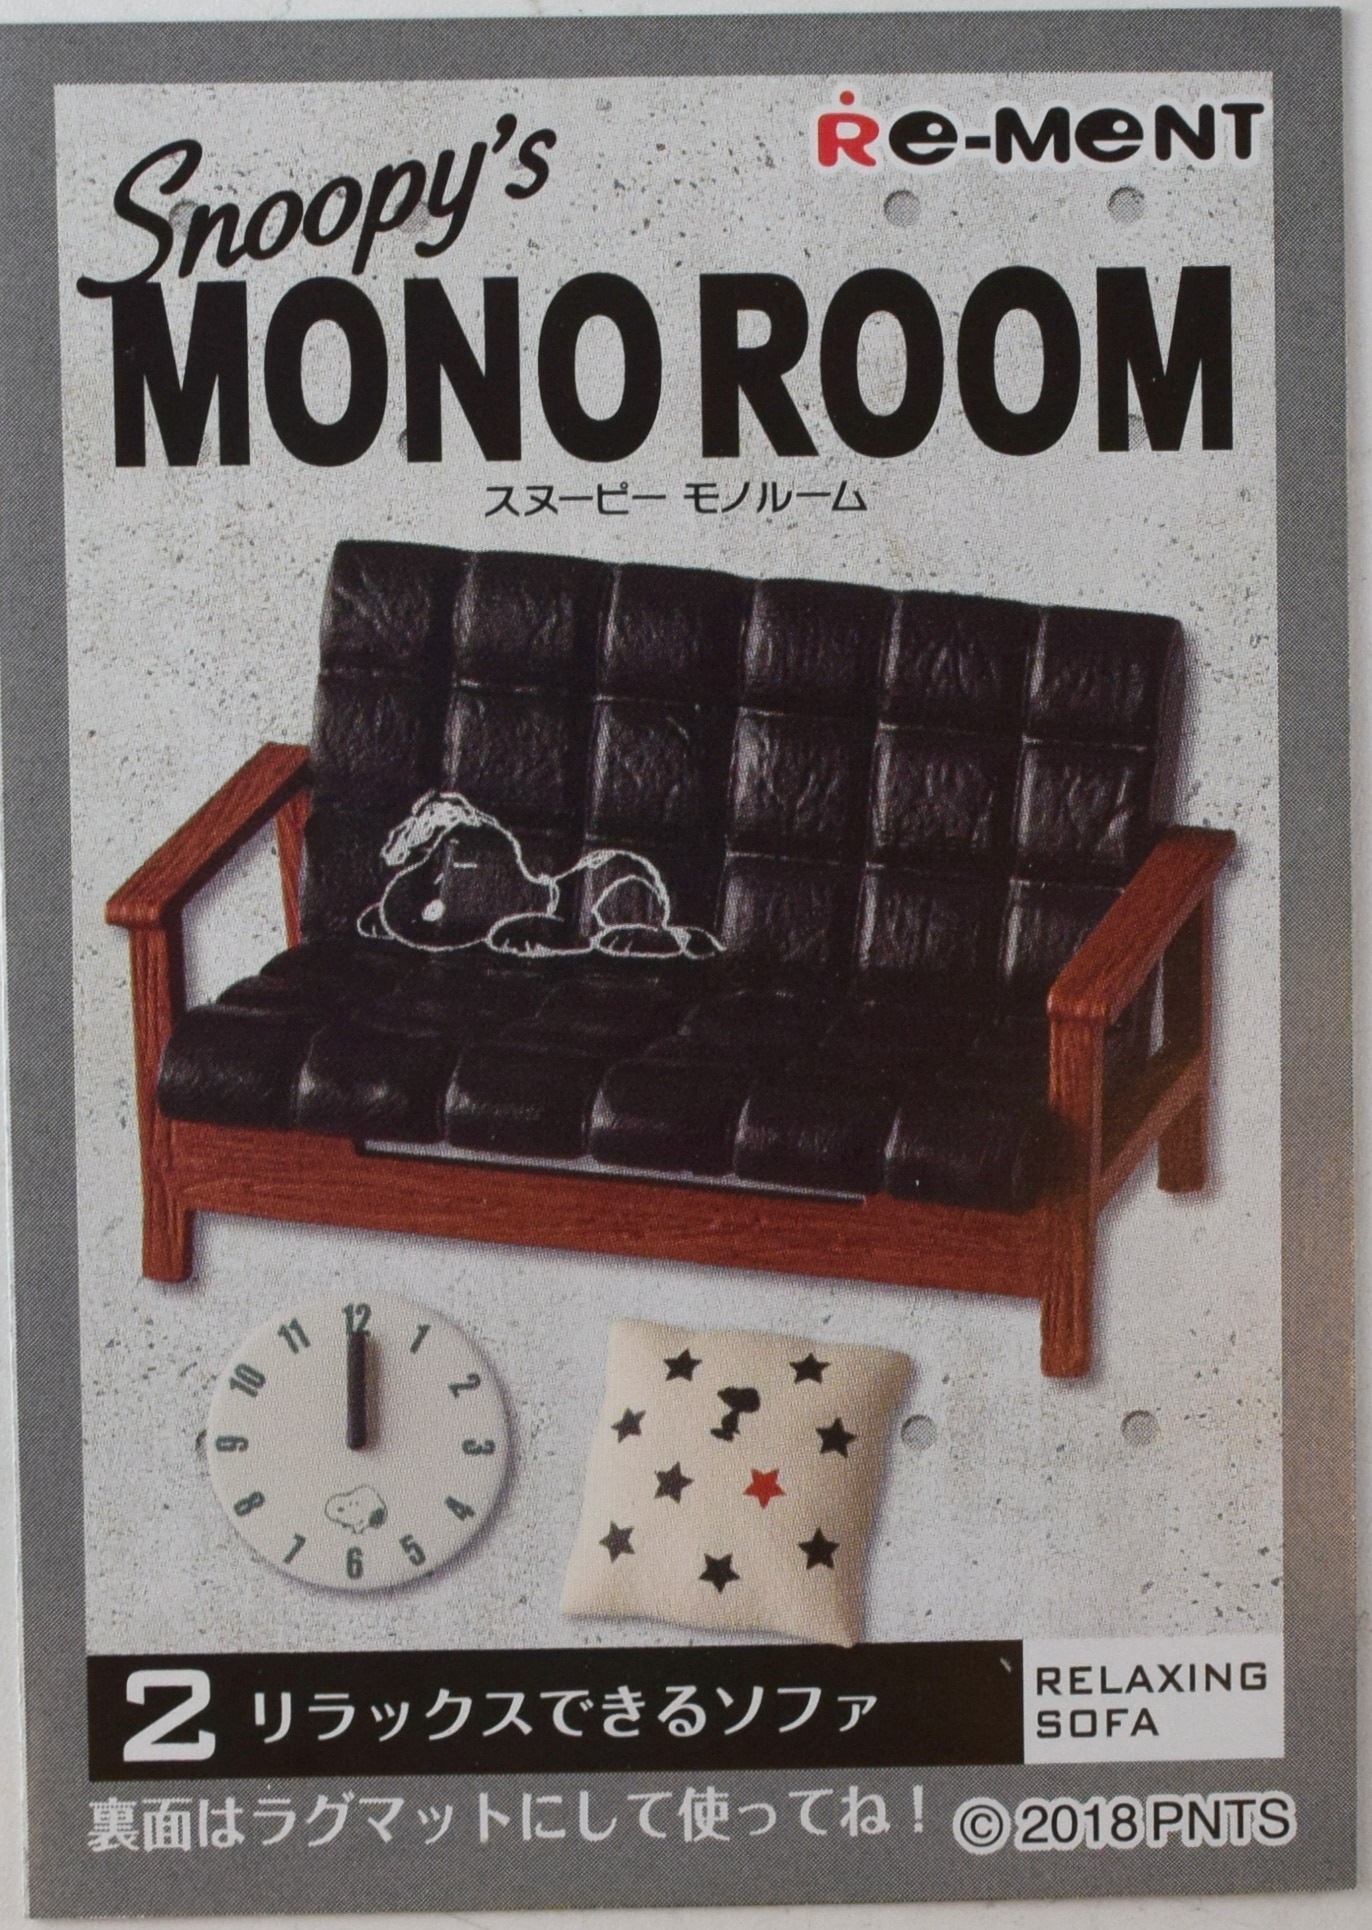 リーメント Snoopy S Mono Room 2 リラックスできるソファ まんだらけ Mandarake